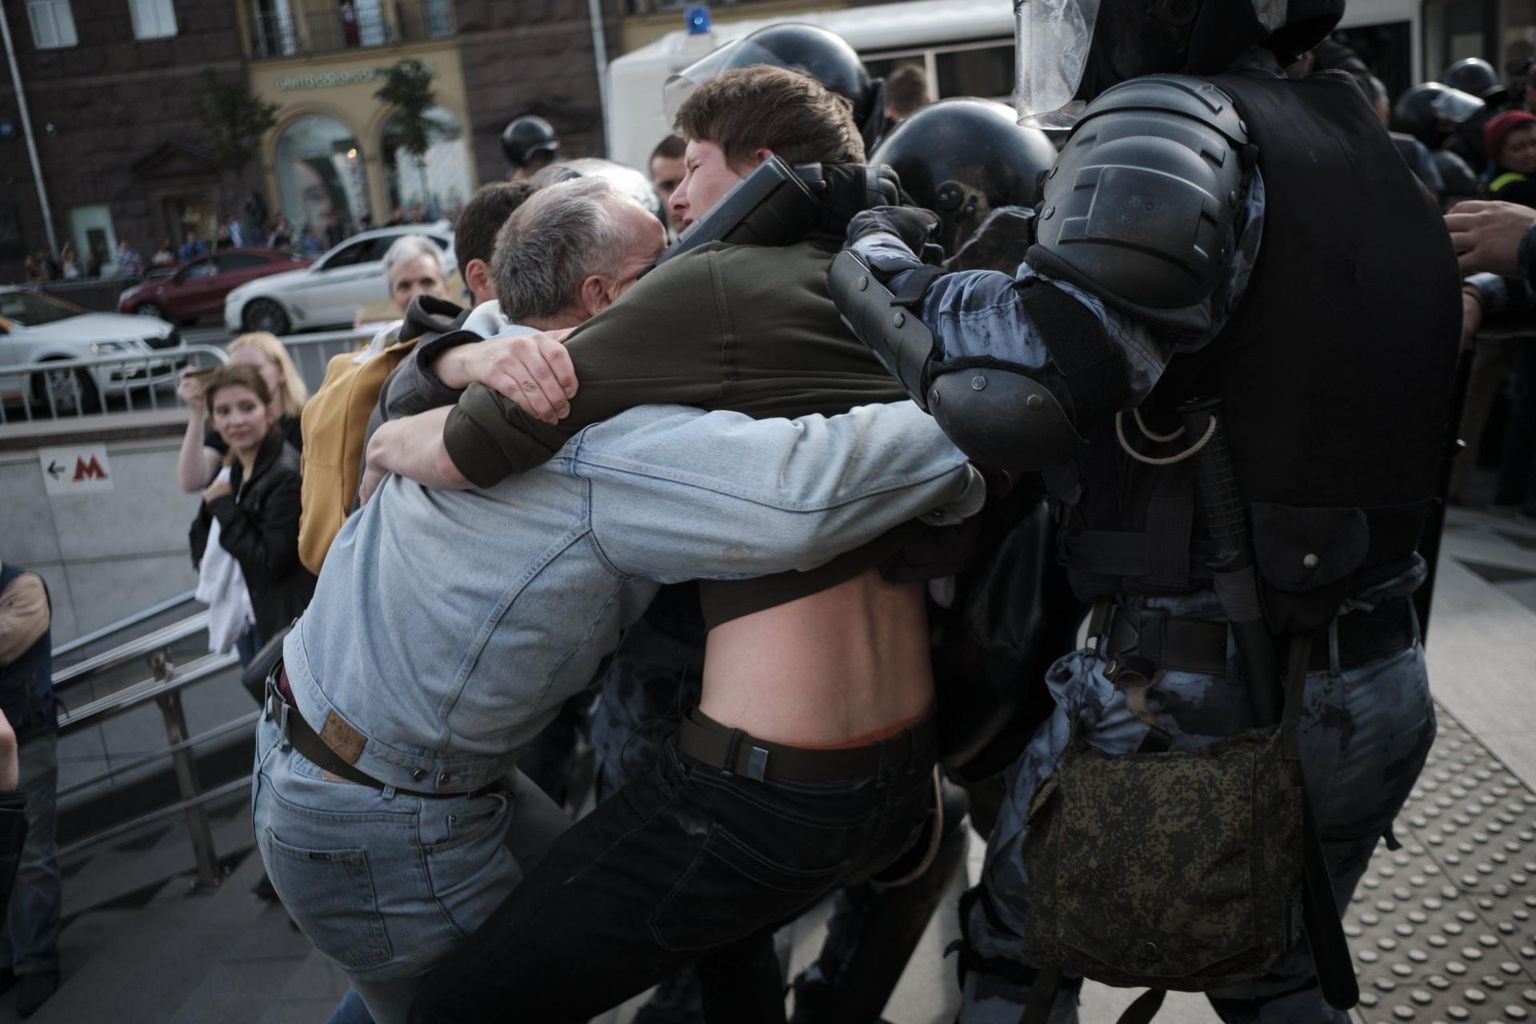 Isa püüdmas kaitsta oma poega, keda politsei veab minema nädal tagasi Moskvas toimunud meeleavaldusel. Lõpuks võeti mõlemad vahi alla koos enam kui tuhande inimesega. FOTO: Anton Karliner/Novaya Gazeta/Sipa/Scanpix